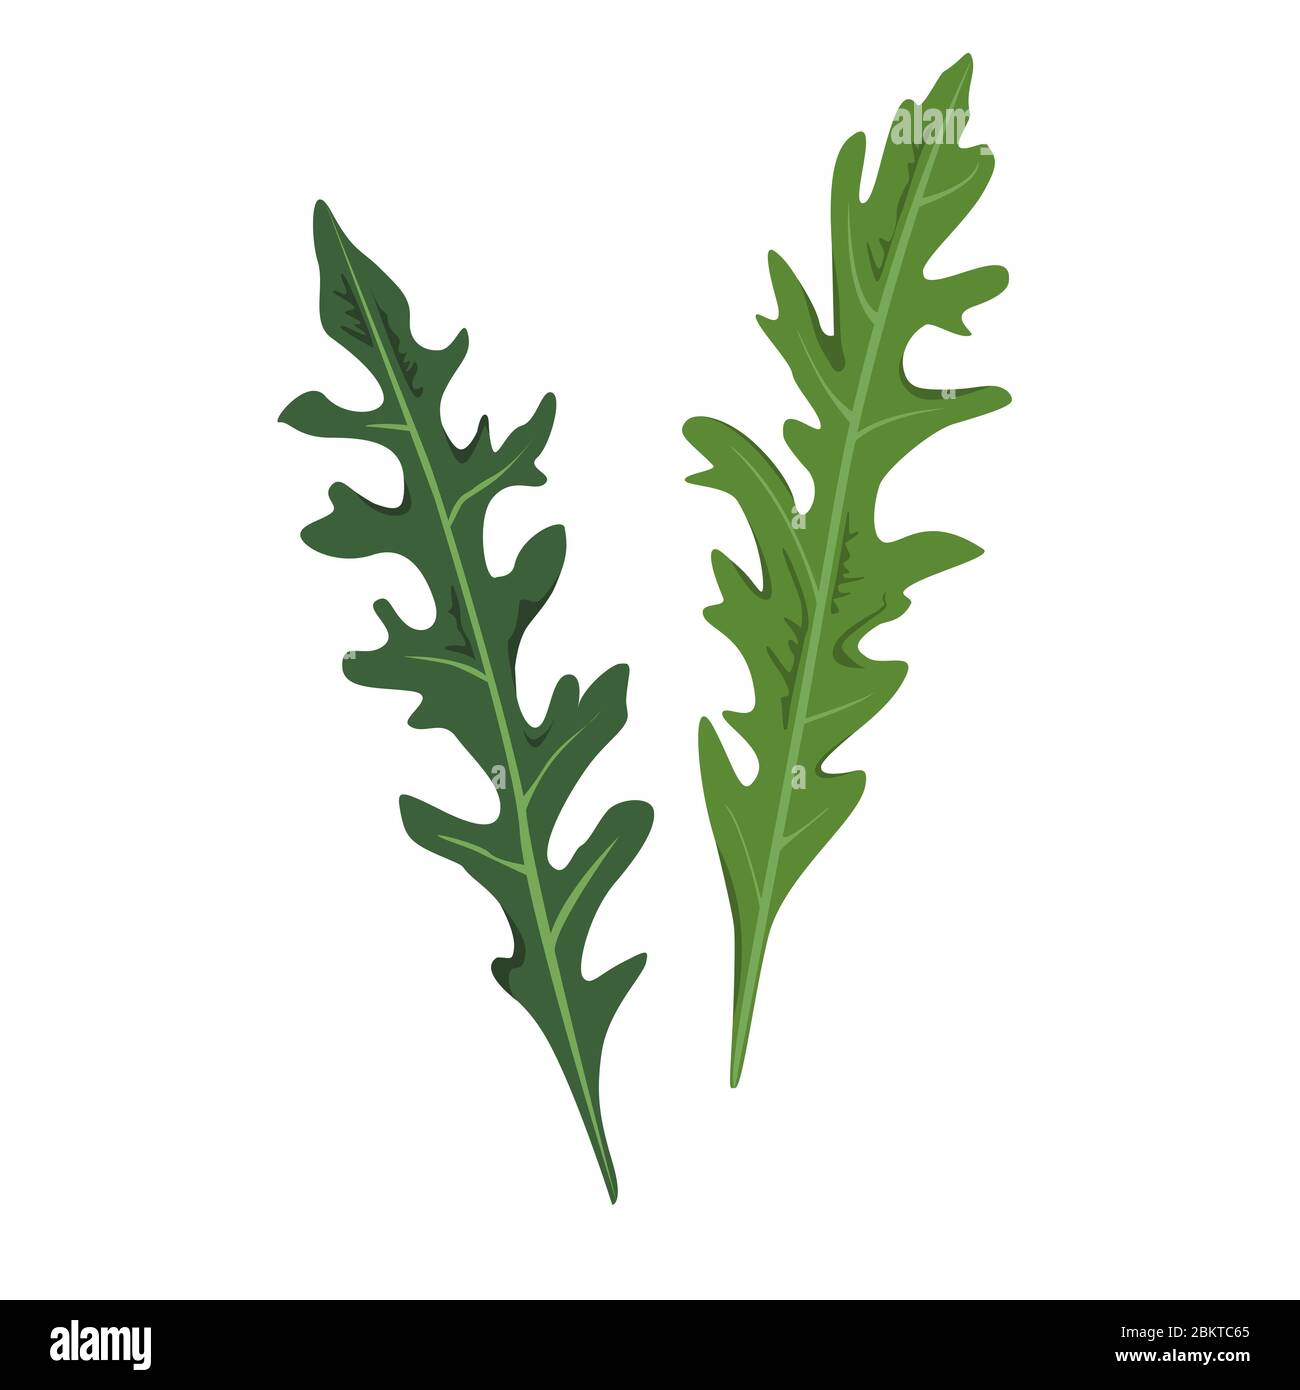 Zwei frische Rucola oder Gartenrakete Blätter. Natürliche grüne Zutat. Kulinarisches Kraut. Flaches Vektordesign Stock Vektor